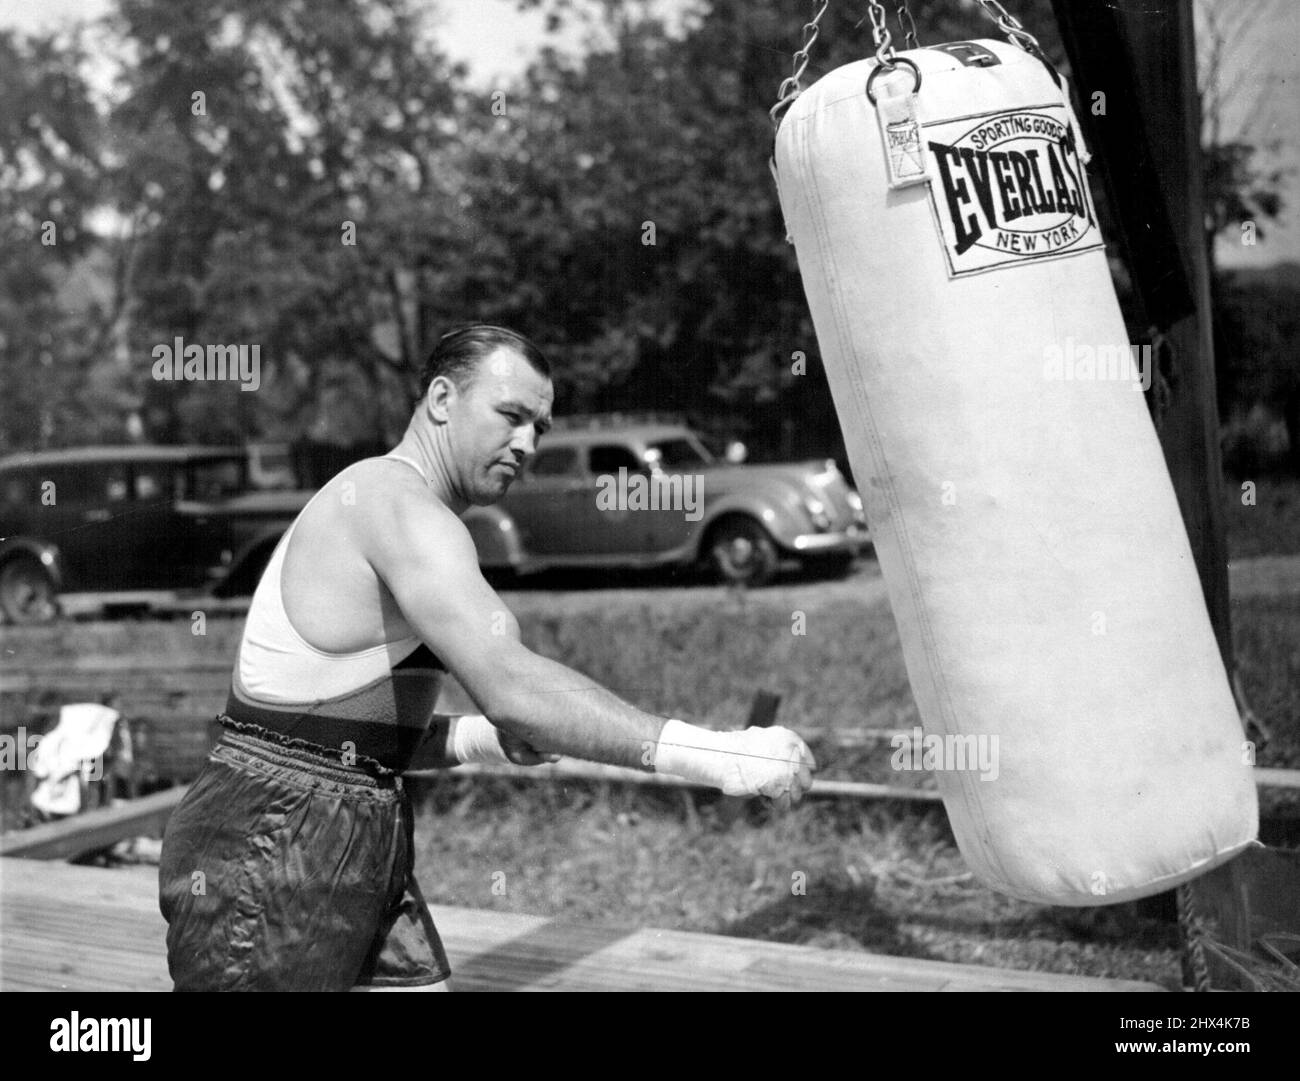 Les poinçons de Sharkey le sac Jack Sharkey a montré ici aujourd'hui qu'il a poinçonné le sac de sable lourd dans son camp d'entraînement alors qu'il a commencé ses entraînements préparatoires à son combat de poids lourd avec Joe Louis. 17 février 1953. (Photo par photo de presse associée). Banque D'Images